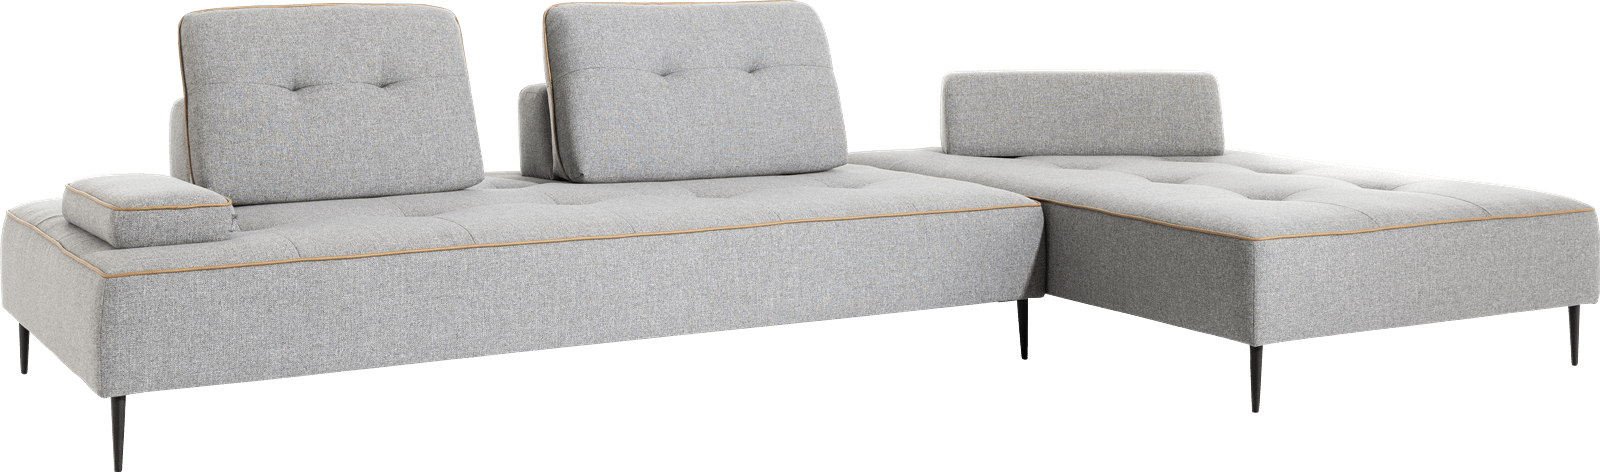 XOOON - Saint Tropez - Minimalistisches Design - Sofas - 4-Sitzer Element 240 cm.